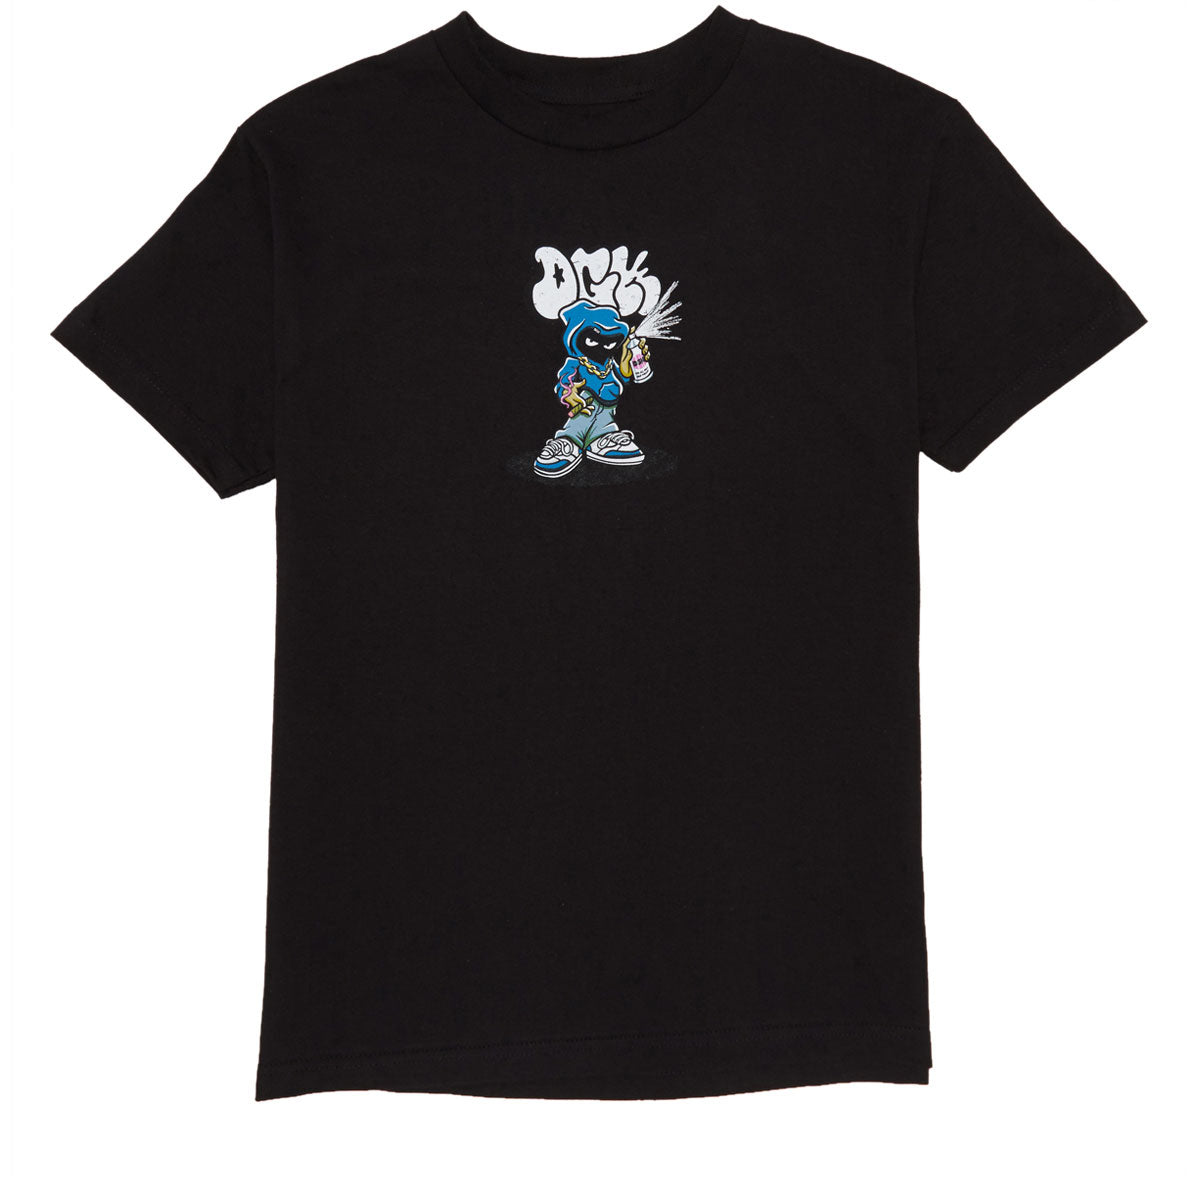 DGK Menace T-Shirt - Black image 1